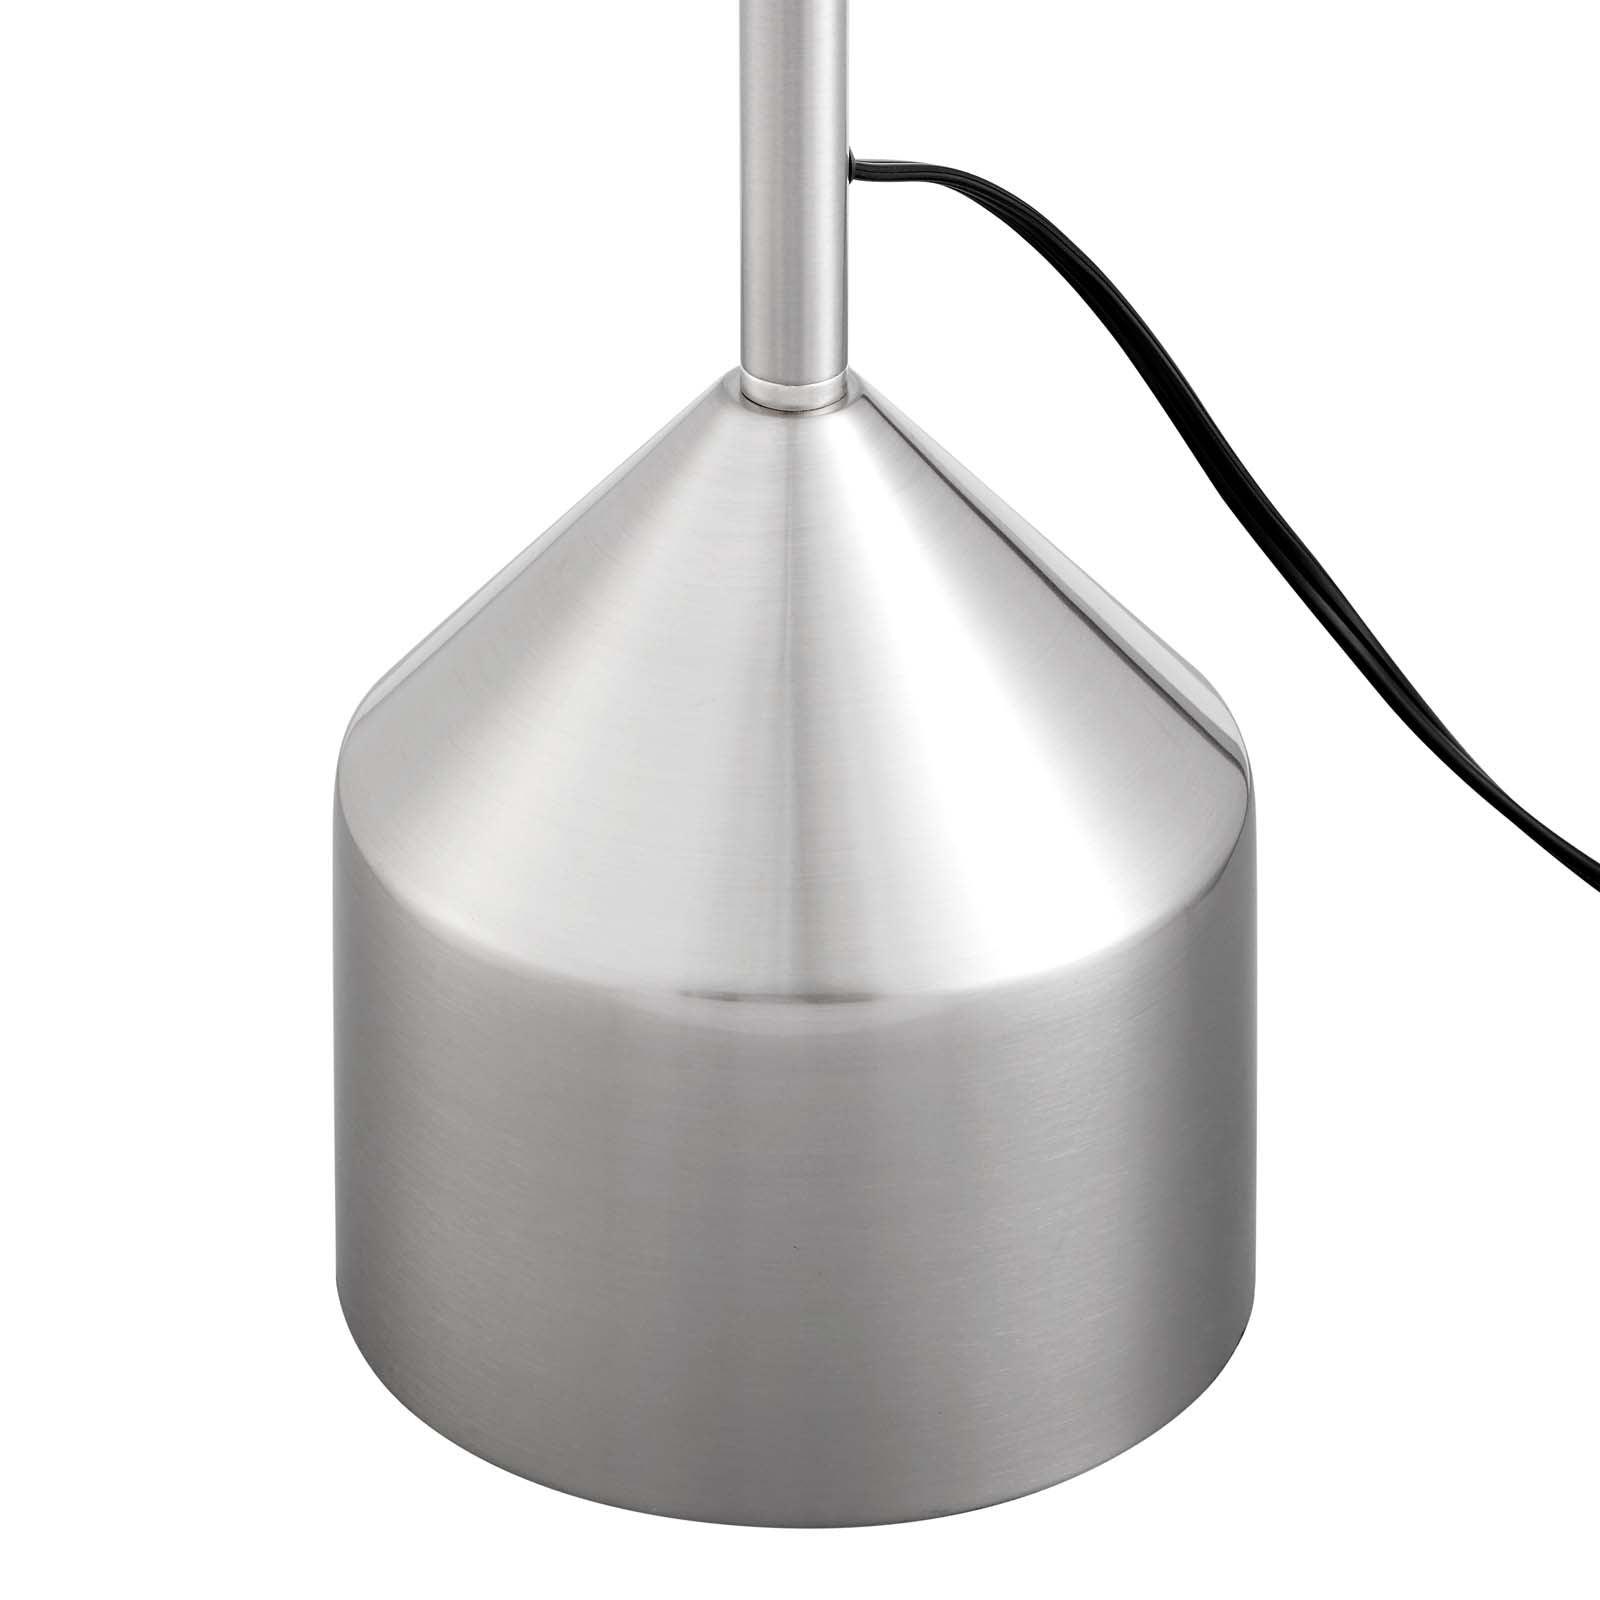 Modway Floor Lamps - Kara Standing Floor Lamp Silver